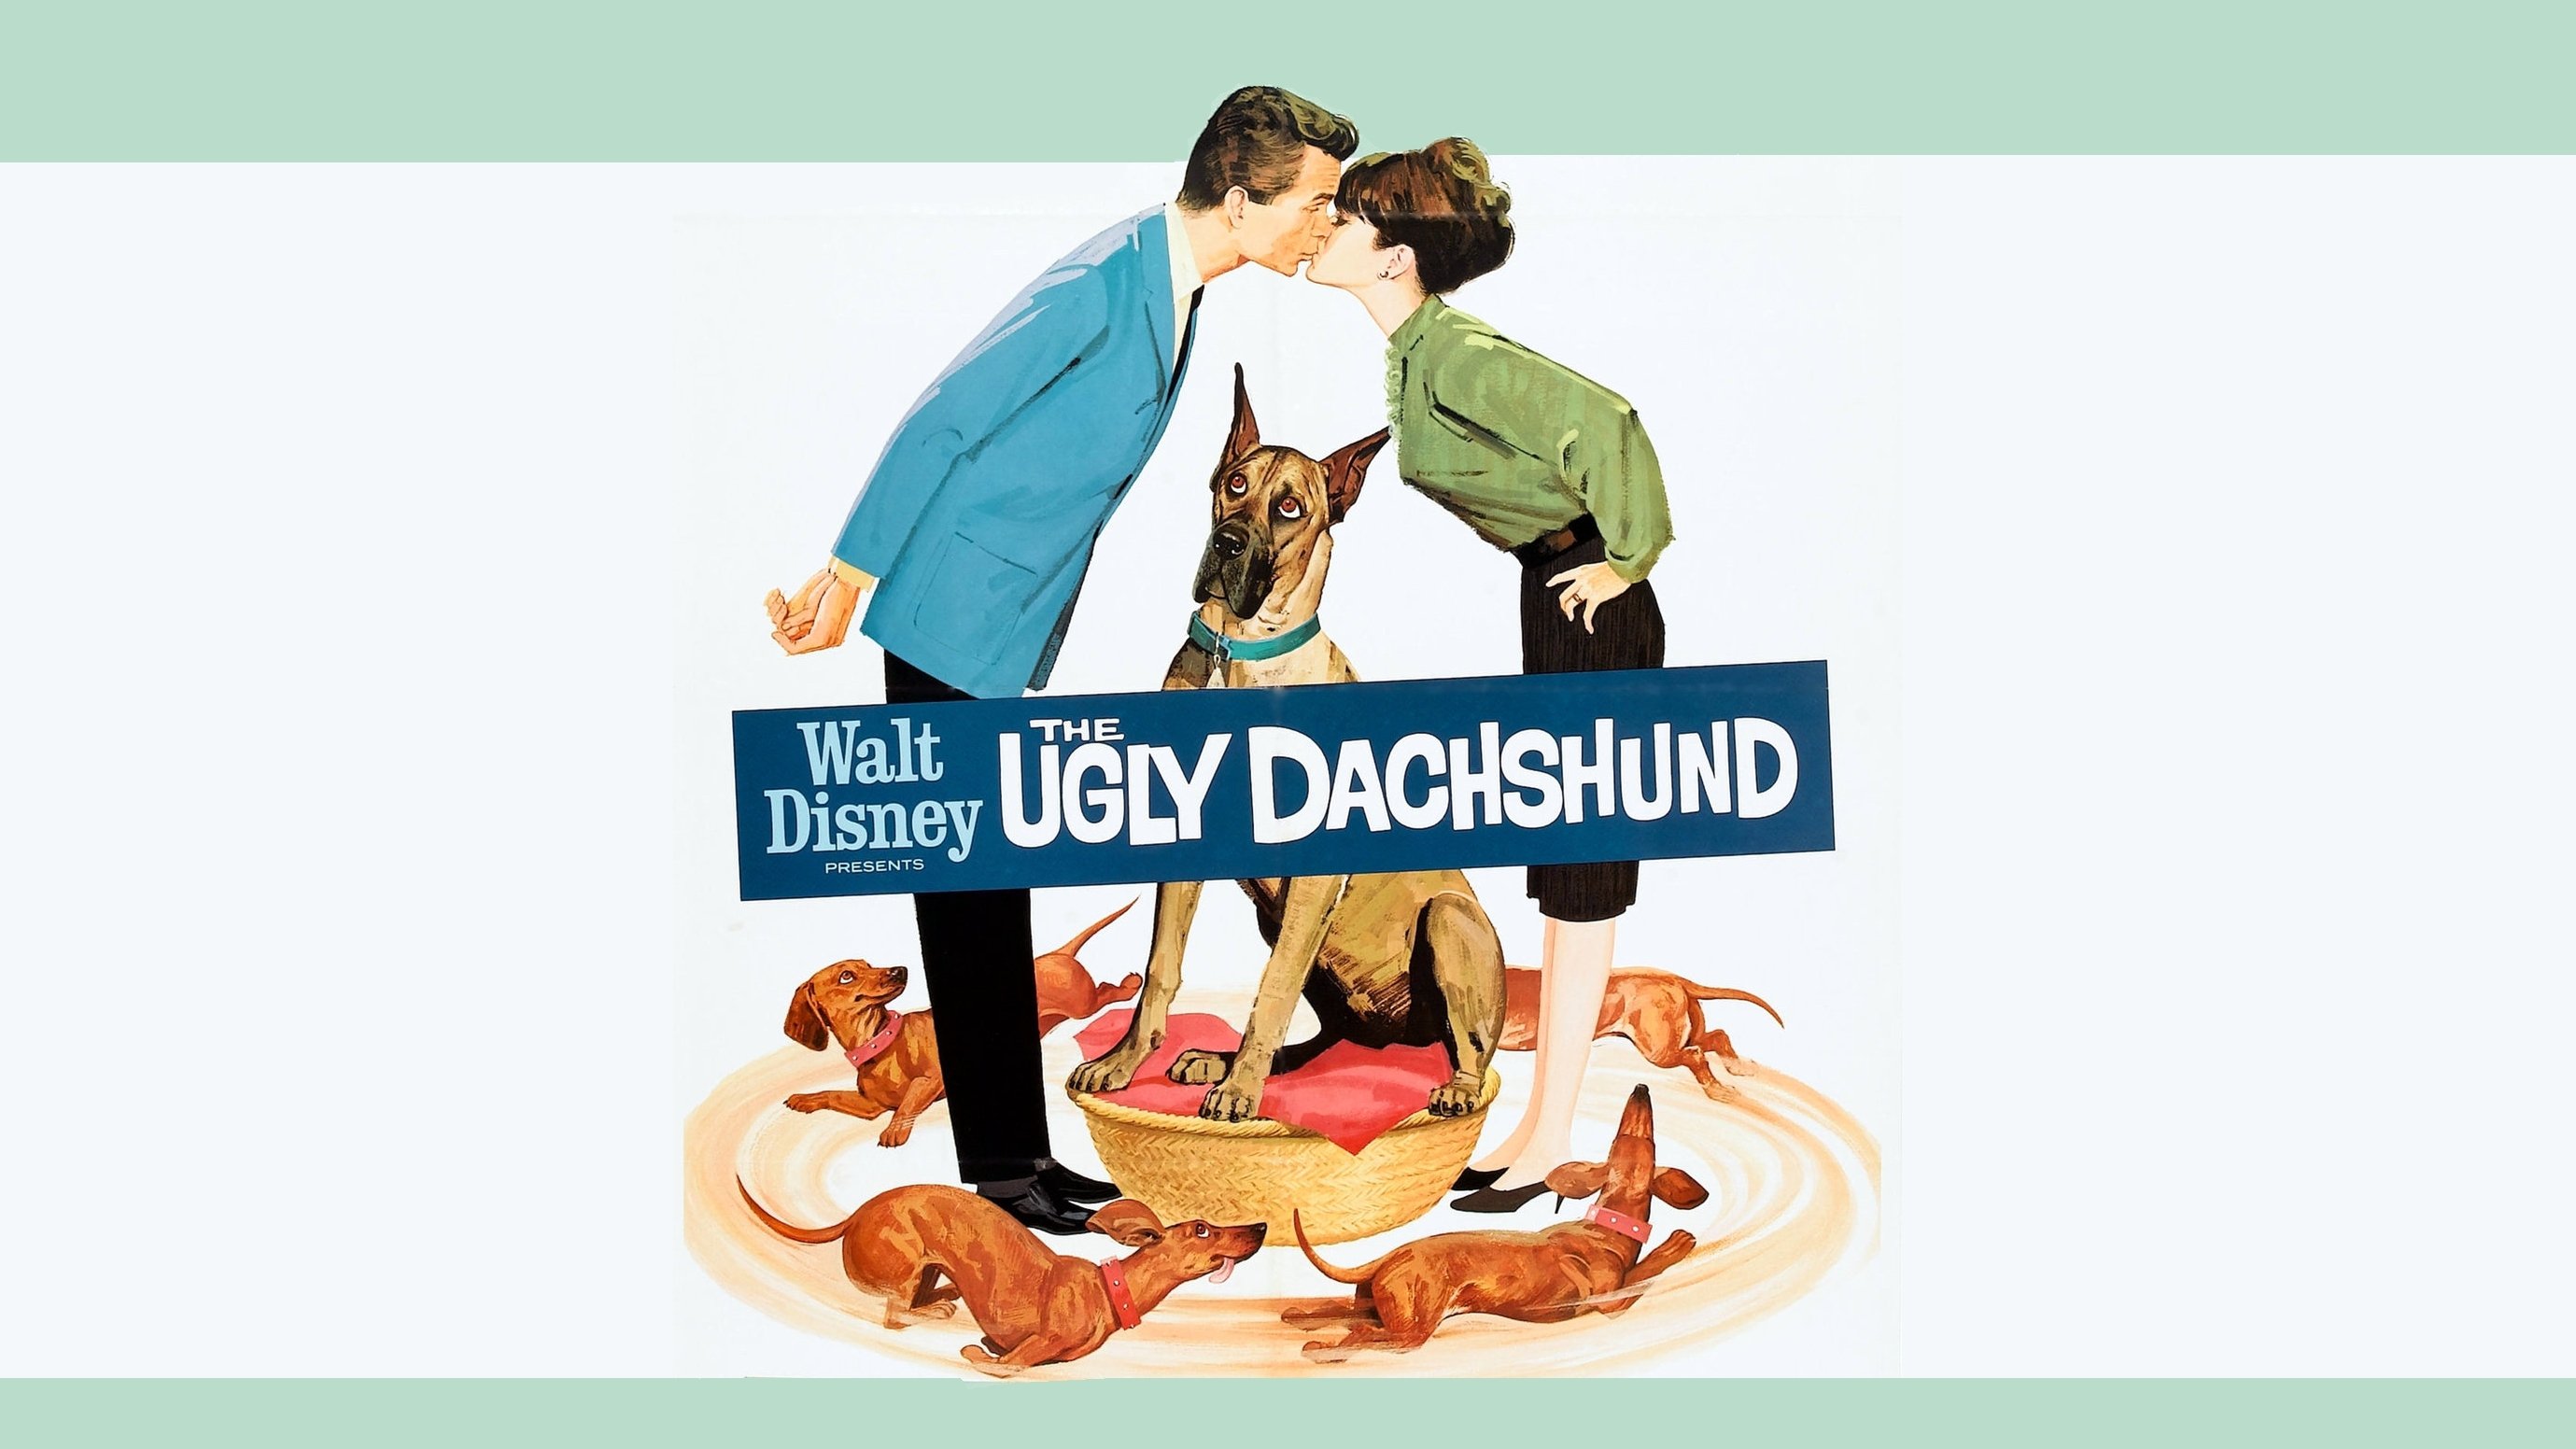 The Ugly Dachshund by G.B. Stern